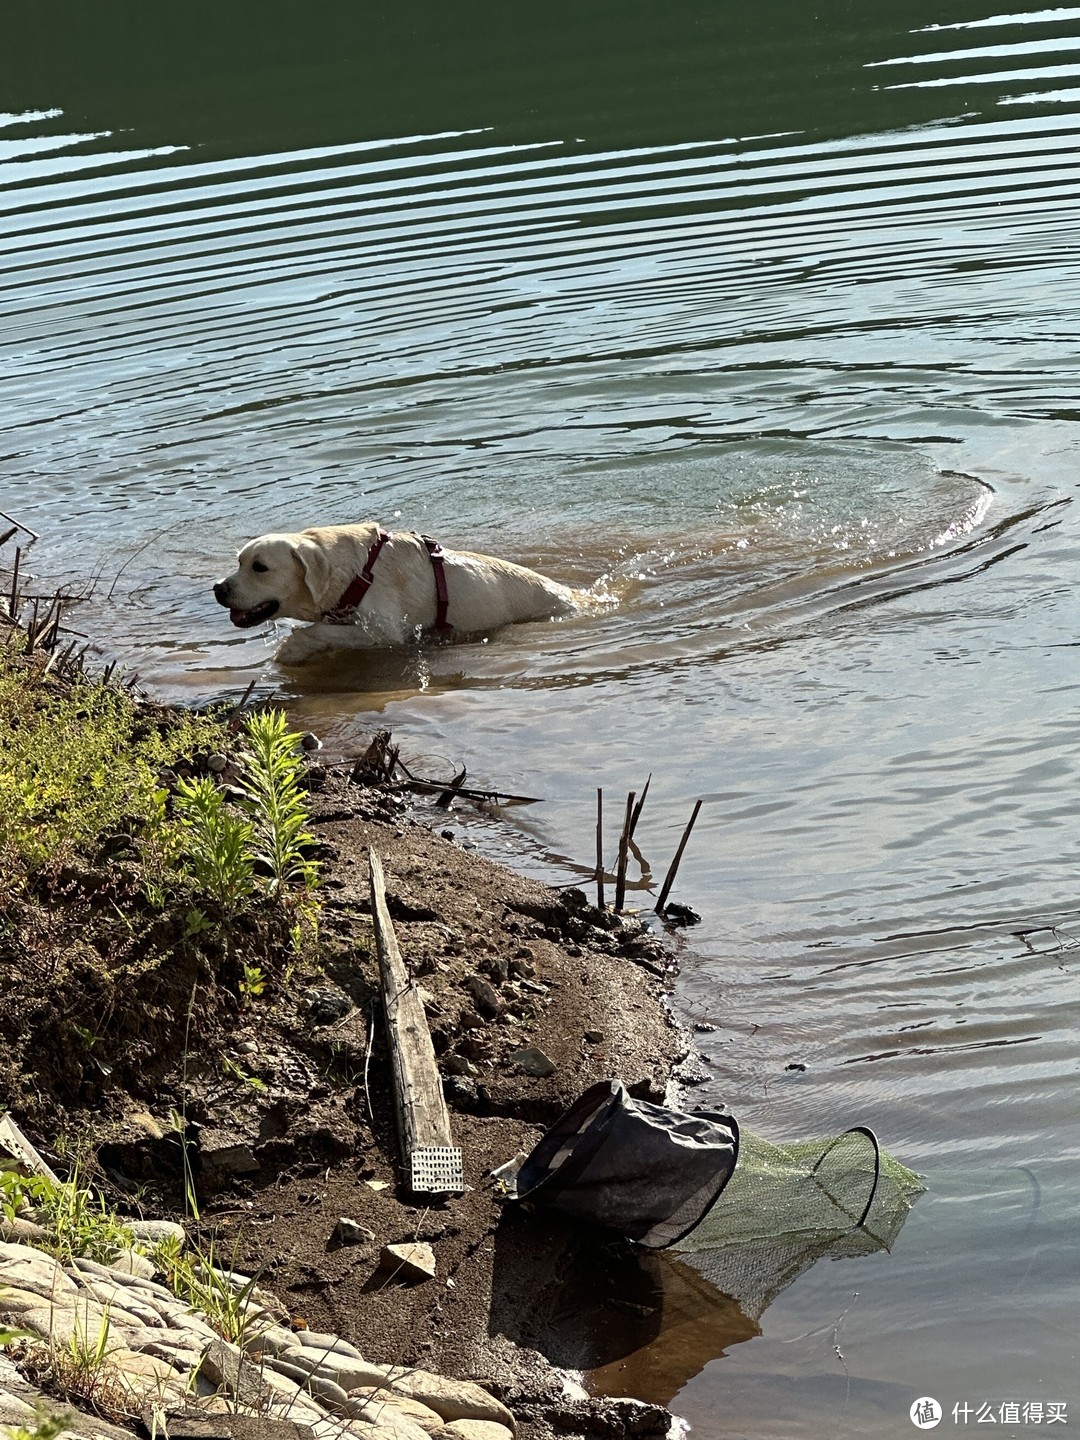 抓到了一只游泳的狗子